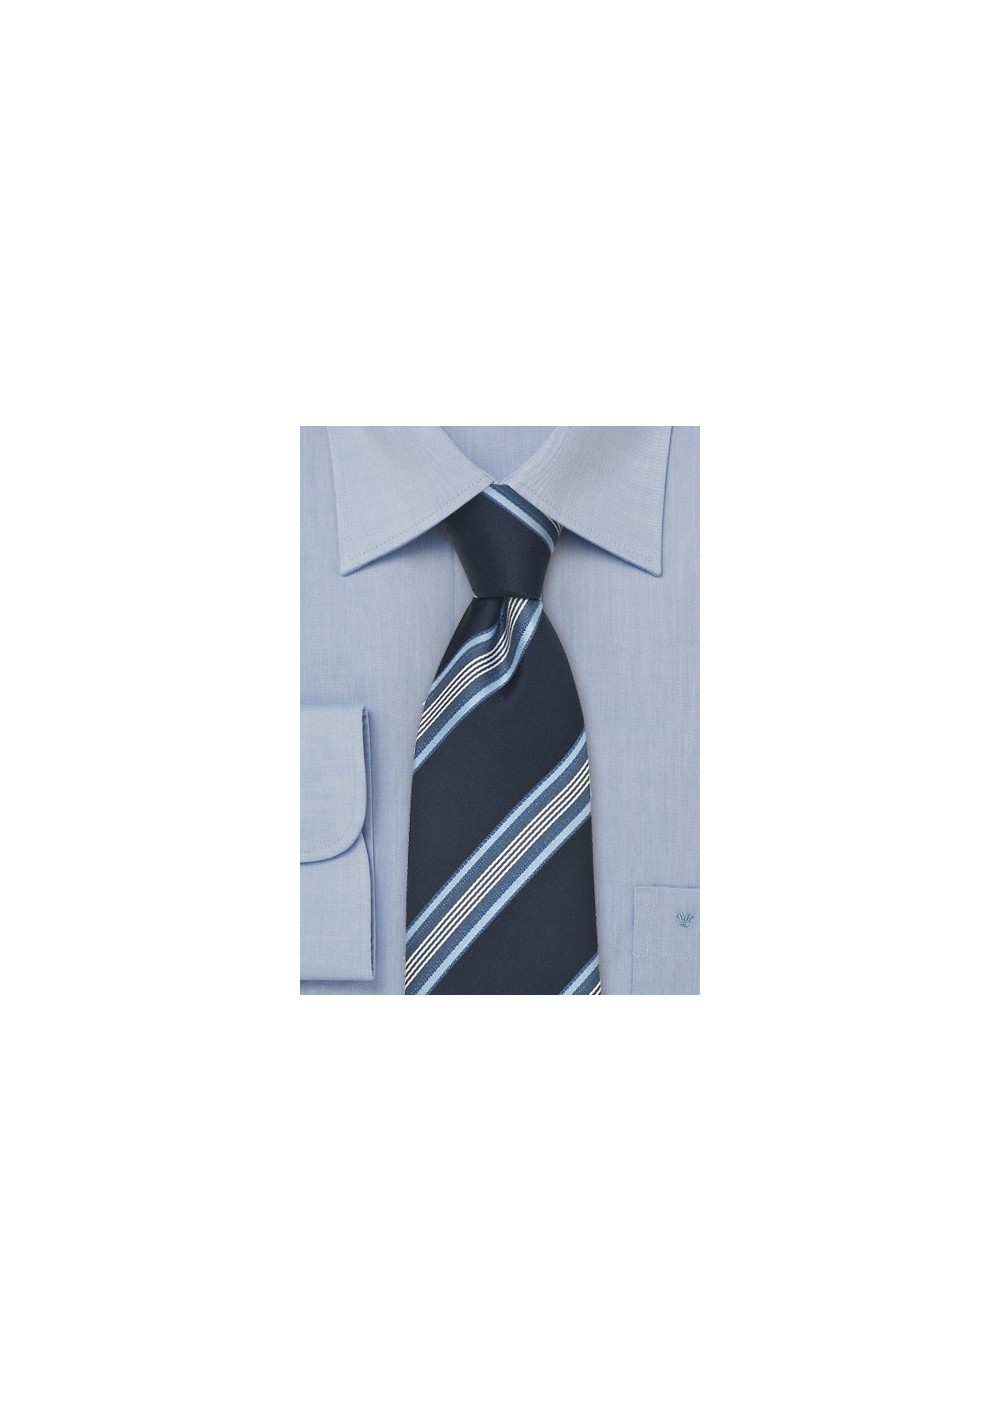 Italian Midnight Blue Striped Silk Tie